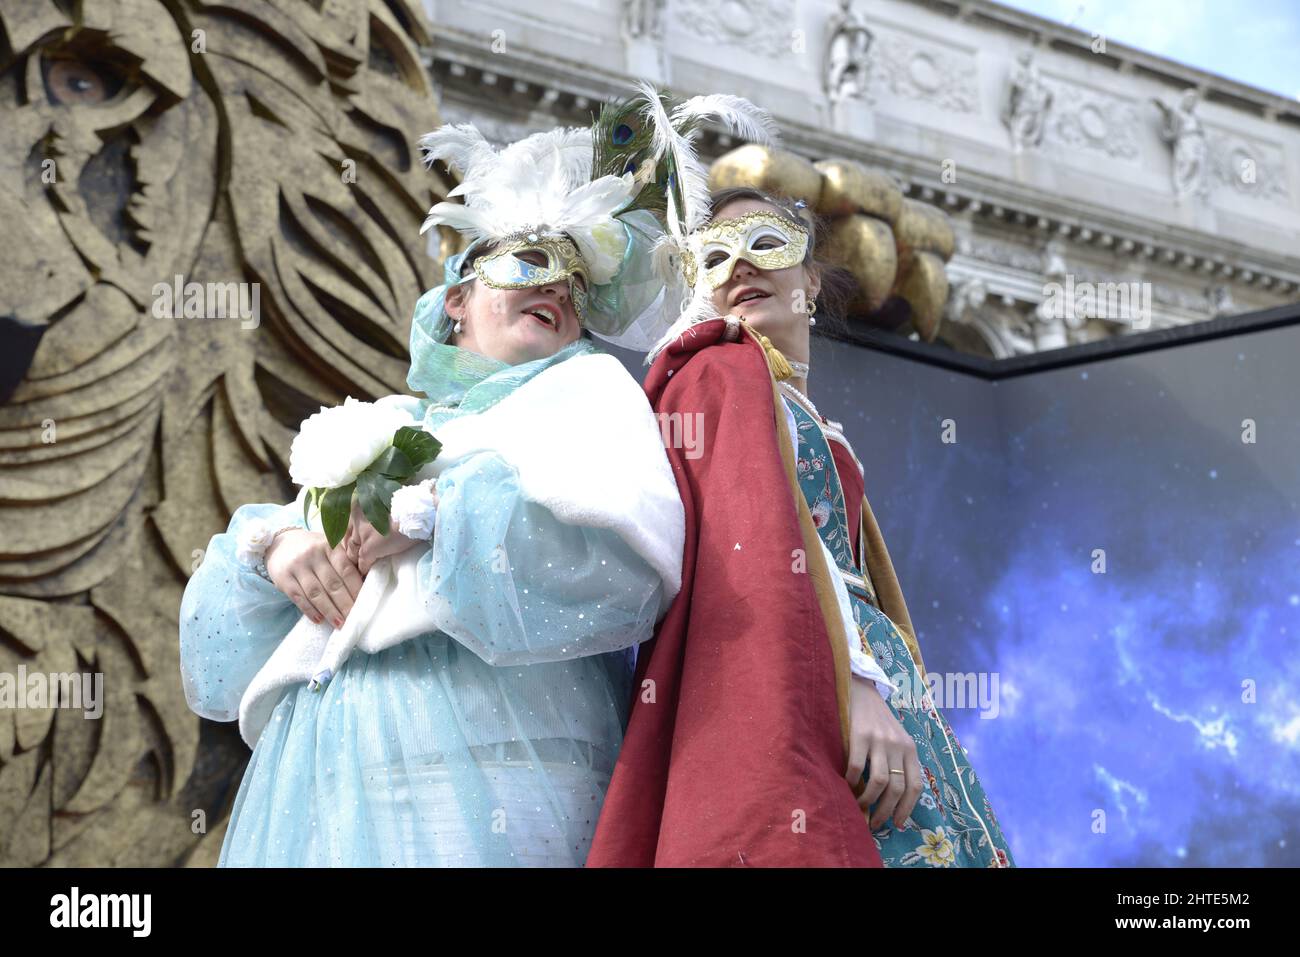 Venecia, Italia. 27th Feb, 2022. El Carnaval de Venecia (en italiano: Carnevale di Venezia) es un festival anual que se celebra en Venecia, Italia. El carnaval termina el martes de Shrove (MartedÃ¬ Grasso o Mardi Gras), que es el día antes del inicio de la Cuaresma en el Miércoles de Ceniza. El festival es mundialmente famoso por sus elaboradas máscaras. (Imagen de crédito: © Mariano Montella/Pacific Press via ZUMA Press Wire) Foto de stock